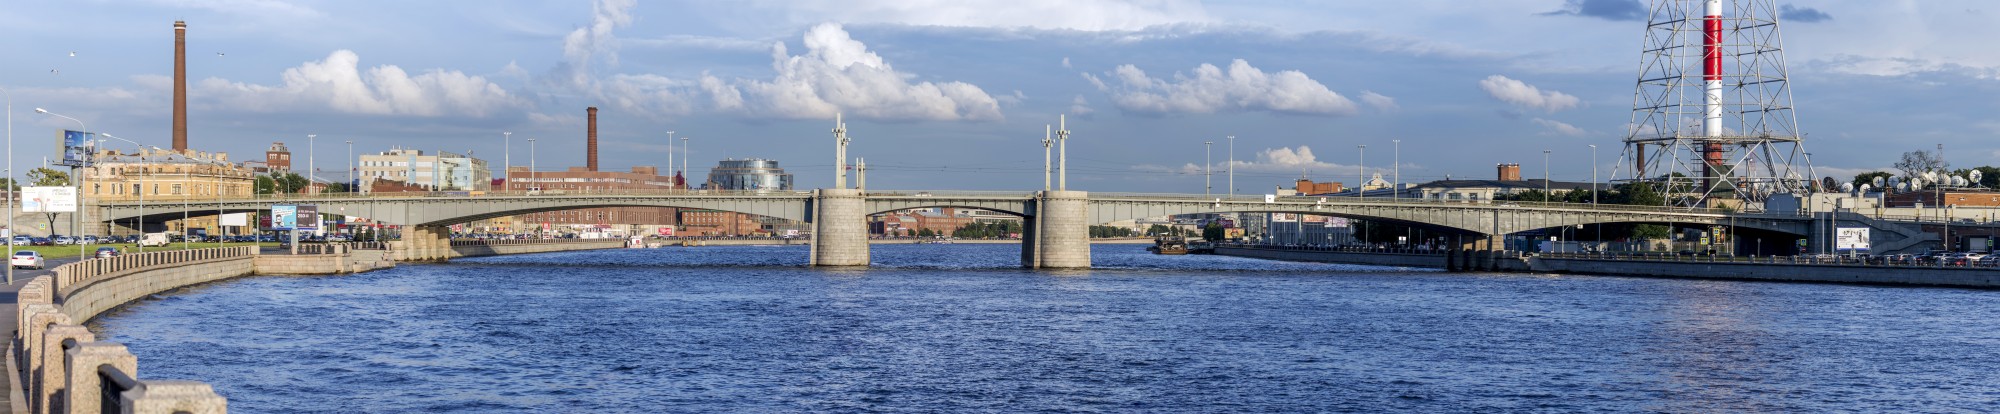 Kantemirovsky Bridge Panorama